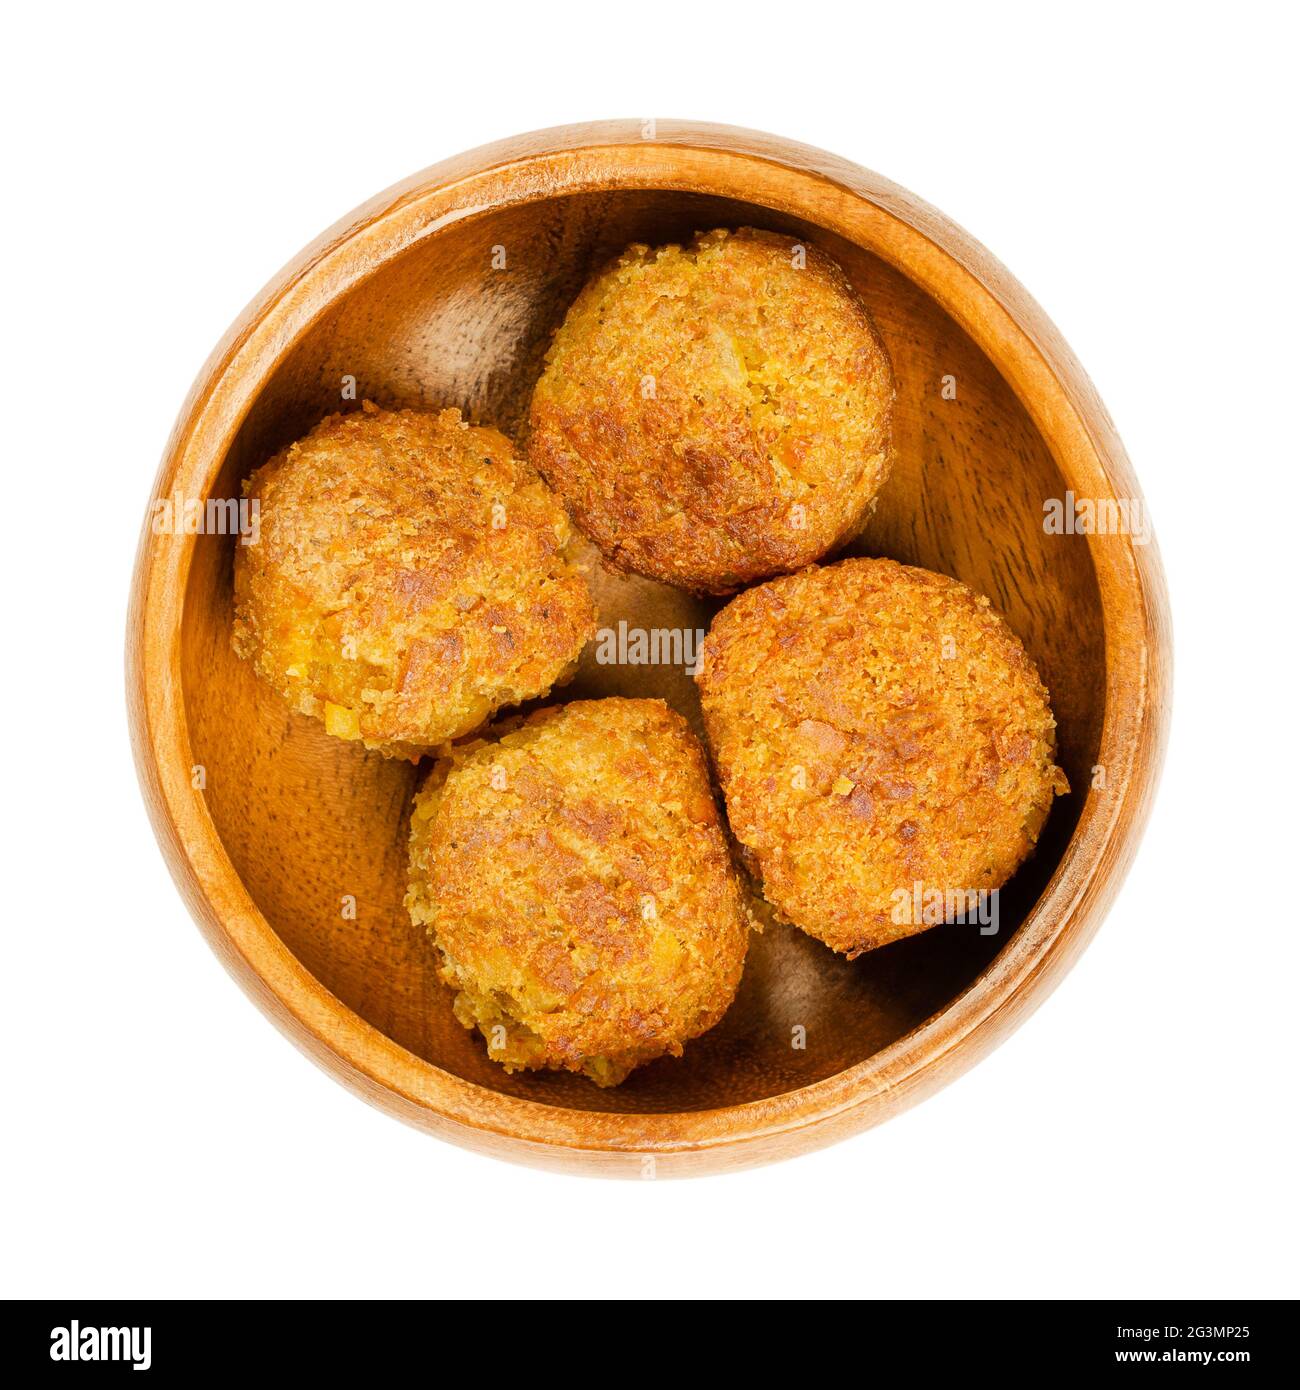 Boulettes de falafel vegan frites, dans un bol en bois. Groupe de beignets en forme de boule, à base de pois chiches et de riz, une alimentation traditionnelle du Moyen-Orient. Banque D'Images